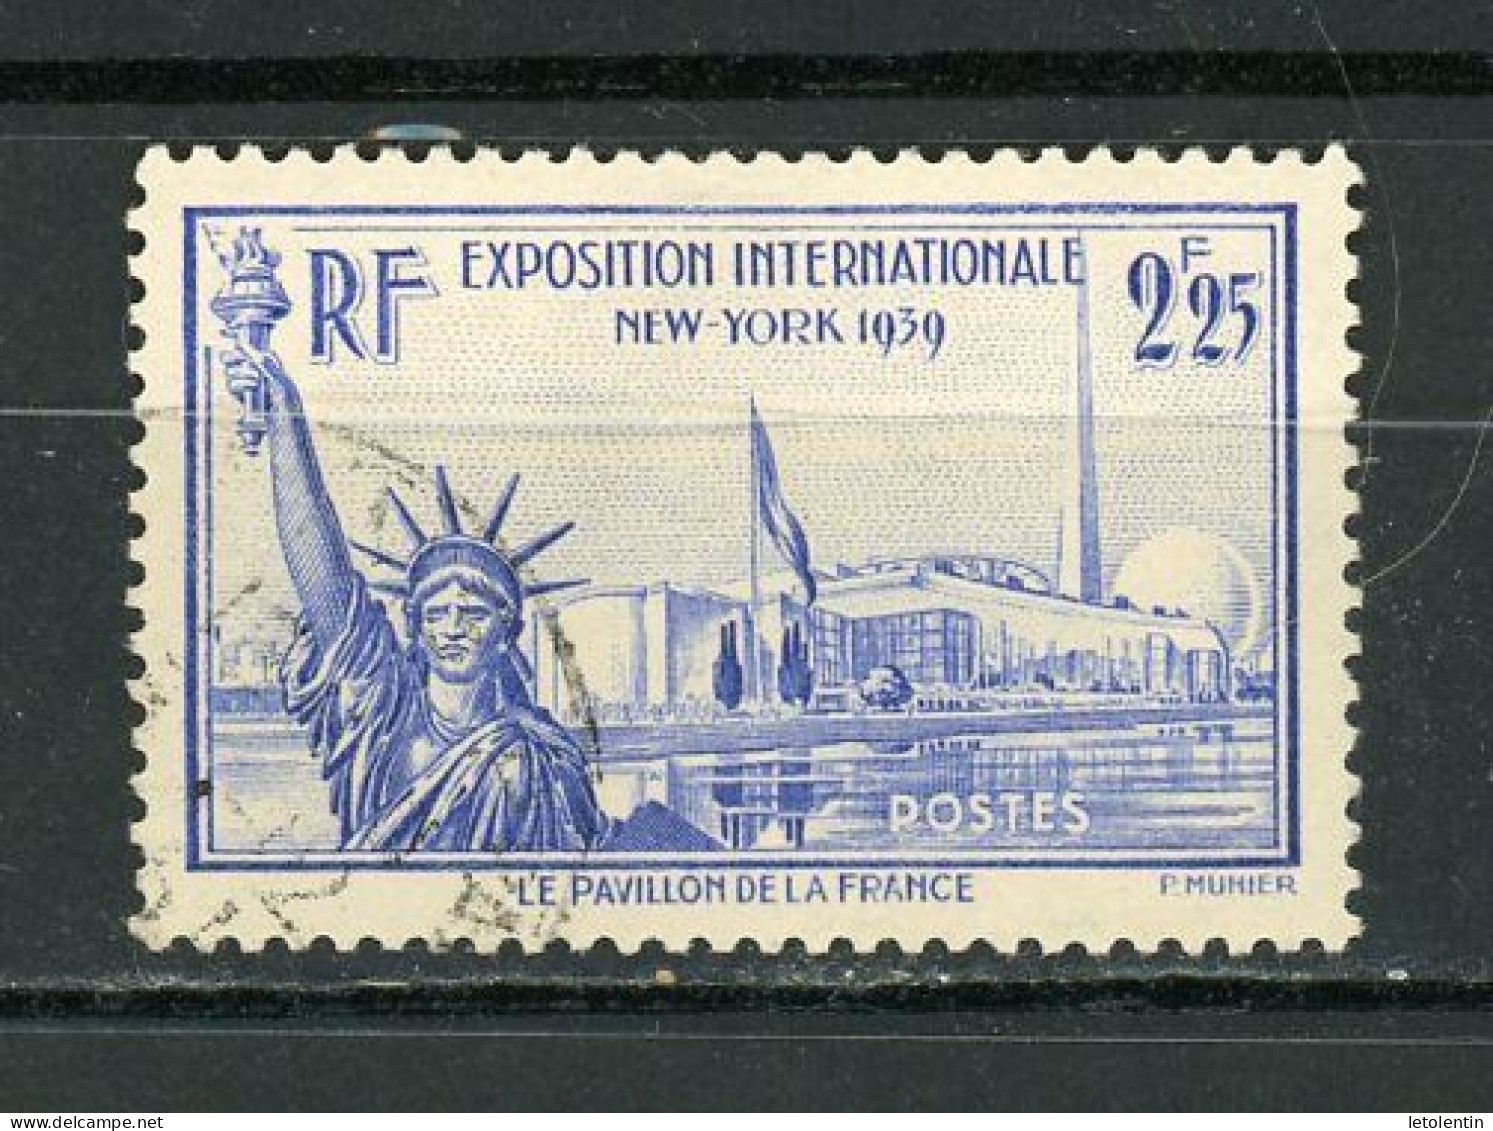 FRANCE - EXPO DE NEW YORK - N° Yvert 426 Obli. - Used Stamps